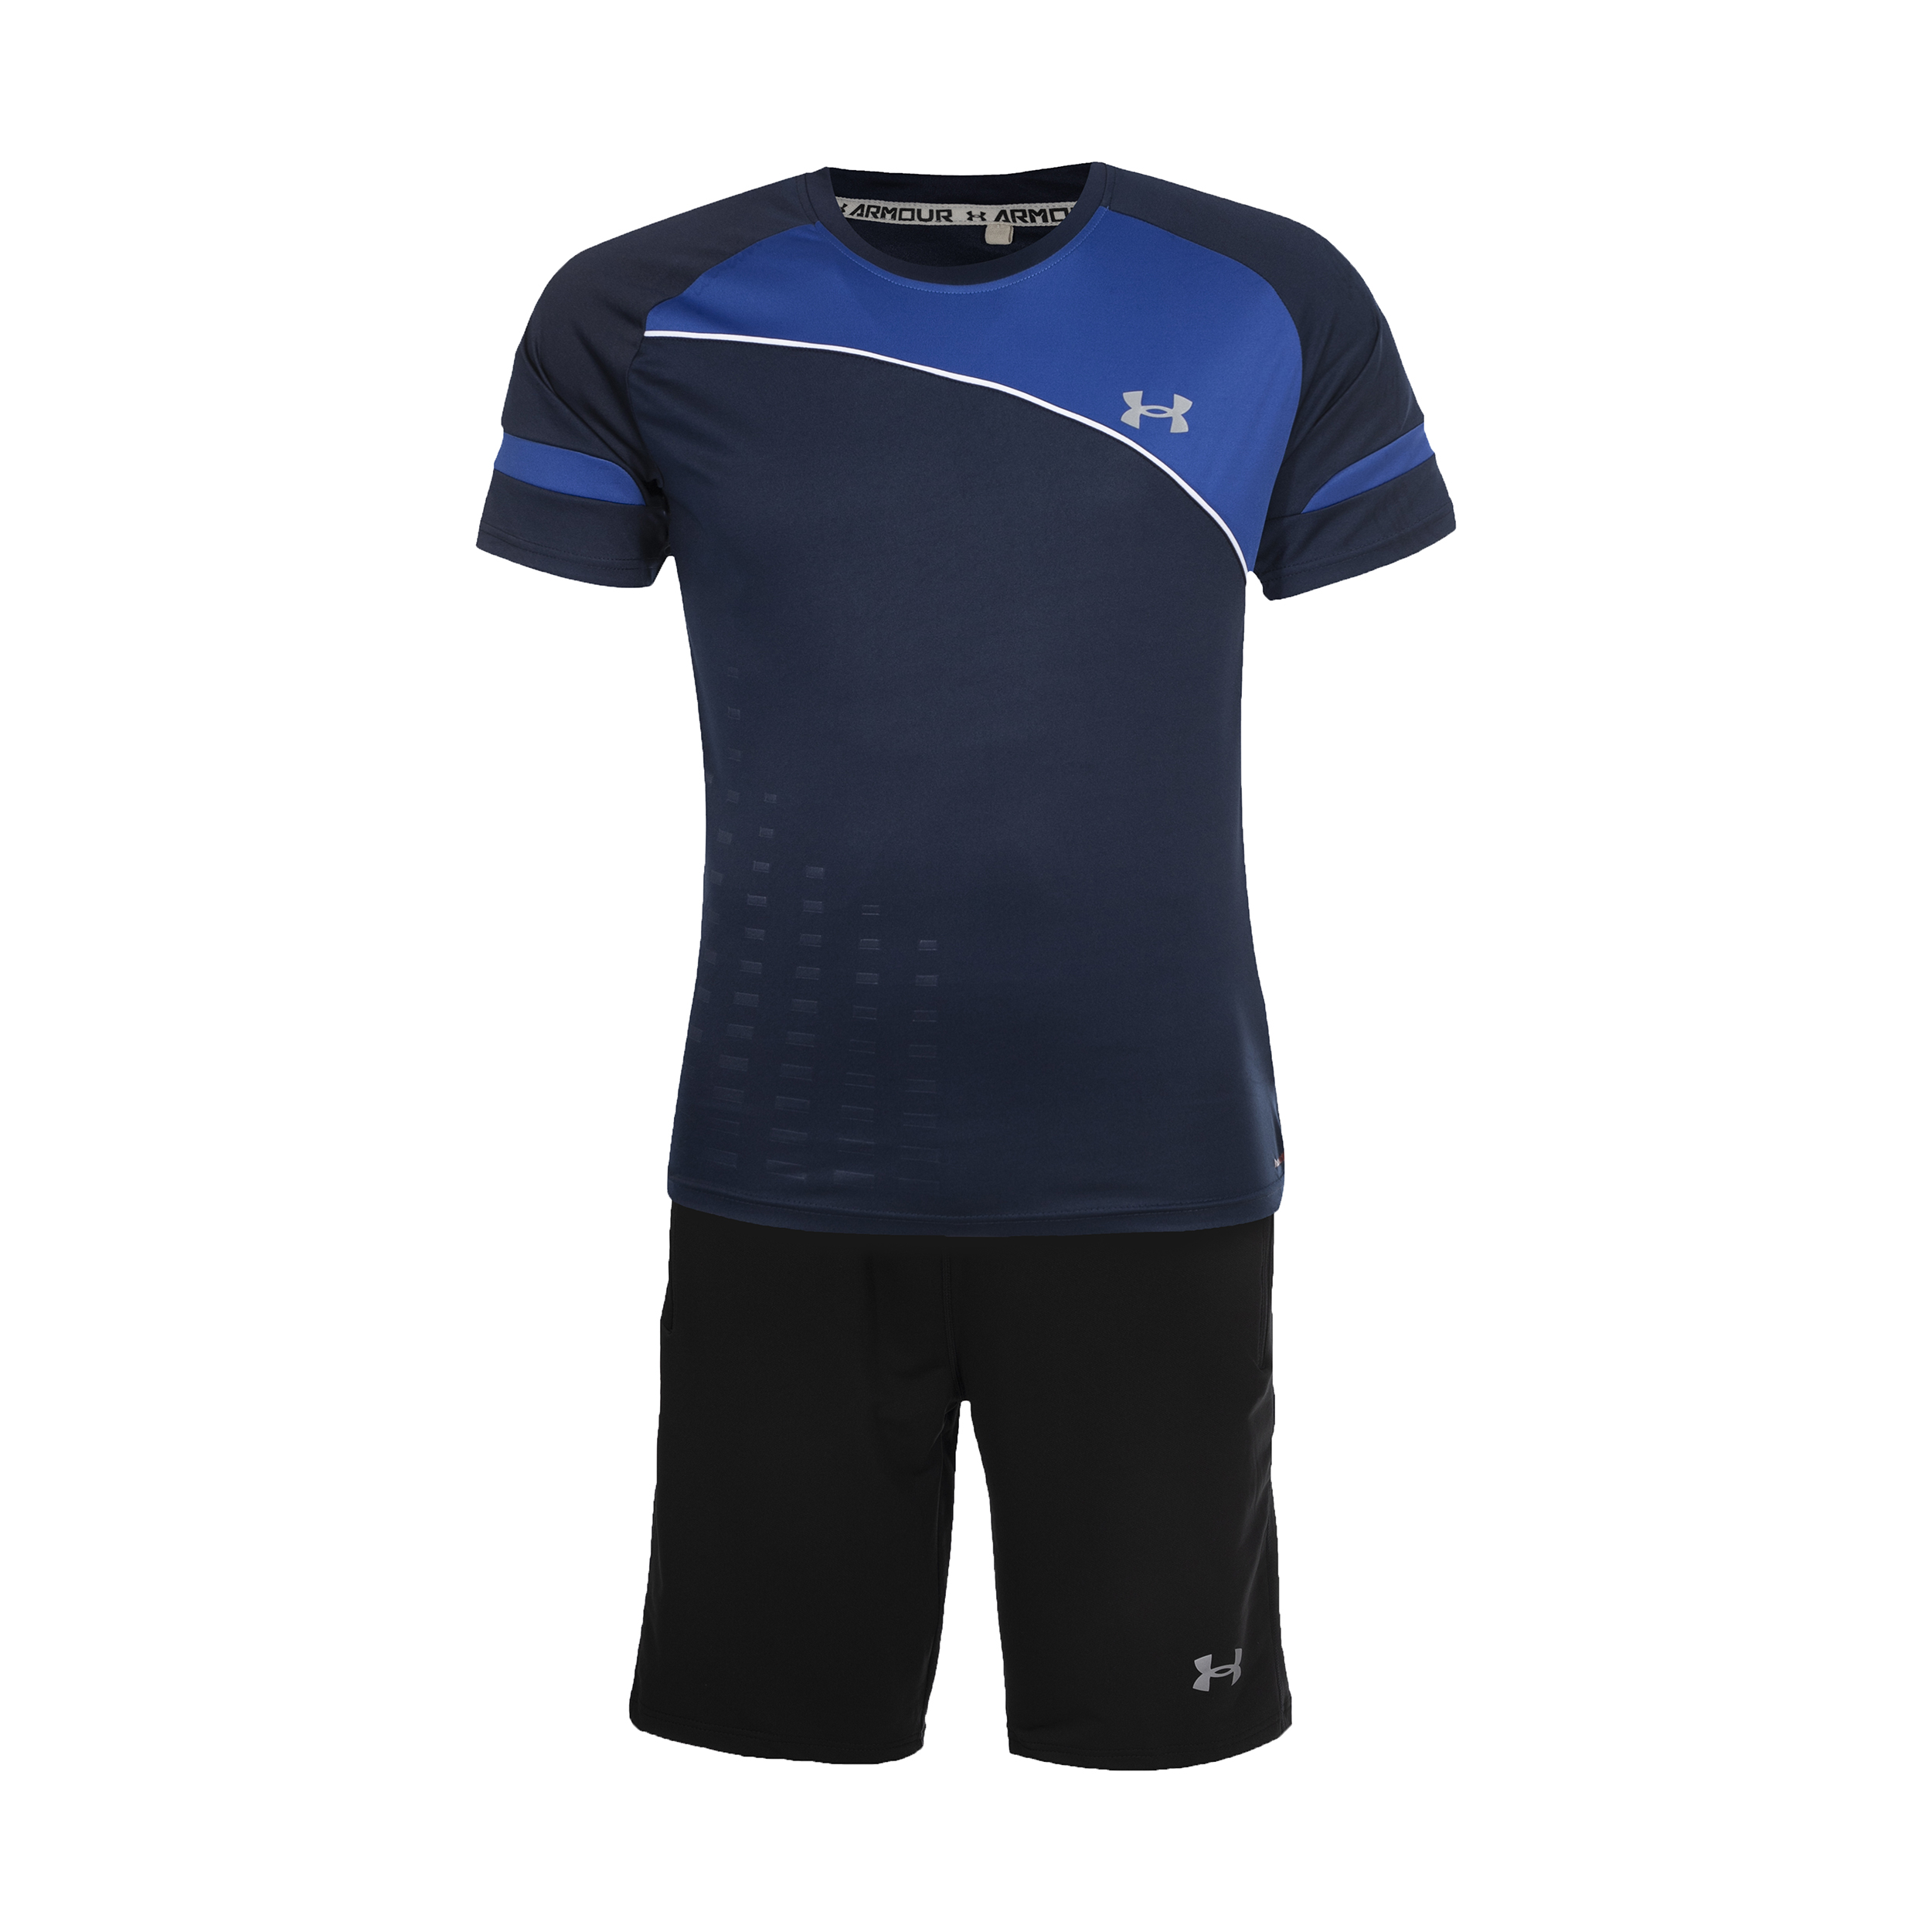 ست تی شرت و شلوارک ورزشی مردانه آندر آرمور مدل heat gear کد 55205